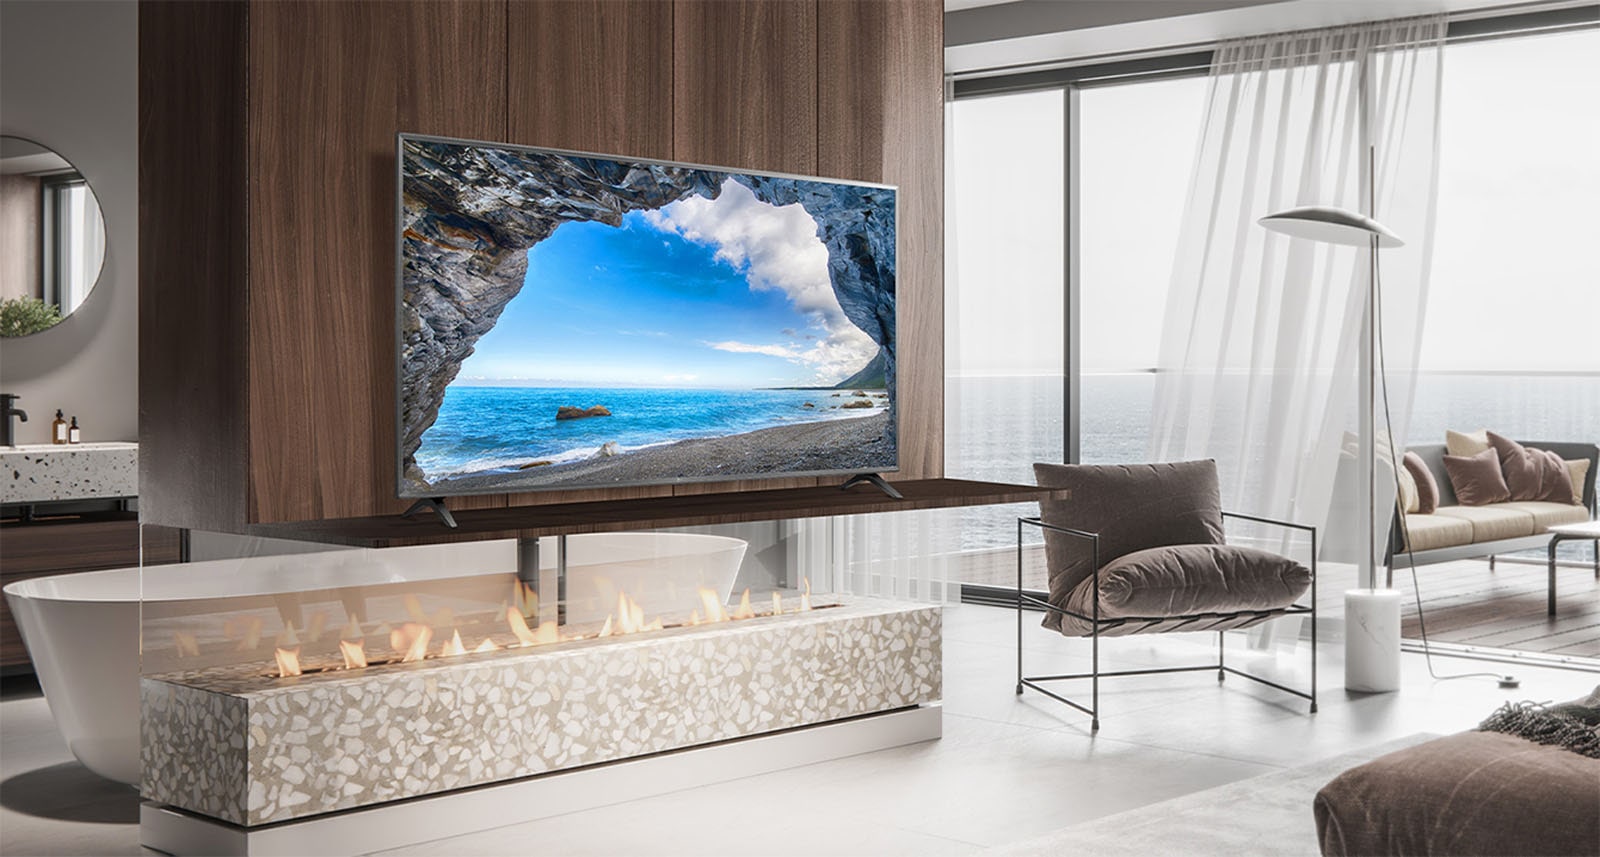 Trong phòng ngủ đơn giản nhìn ra biển, một chiếc TV trên kệ treo tường. Cảnh biển màu xanh hiện lên rực rỡ và rõ ràng trên màn hình TV.